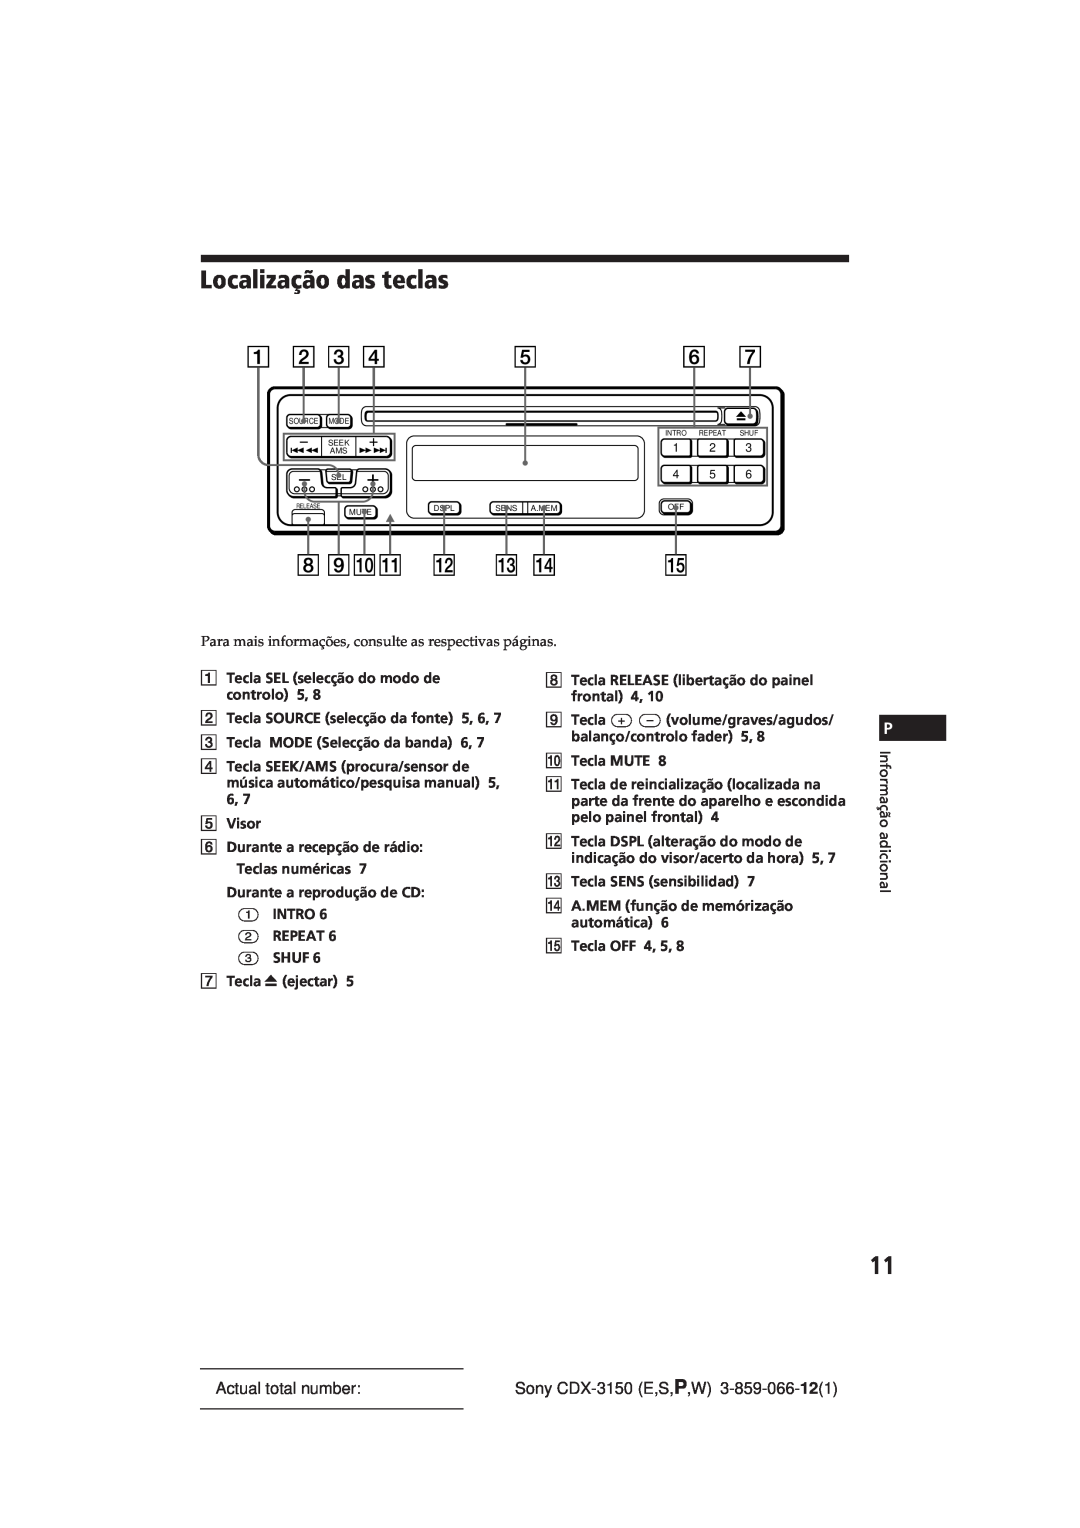 Sony manual Localização das teclas, Actual total number, Sony CDX-3150E,S,P,W 